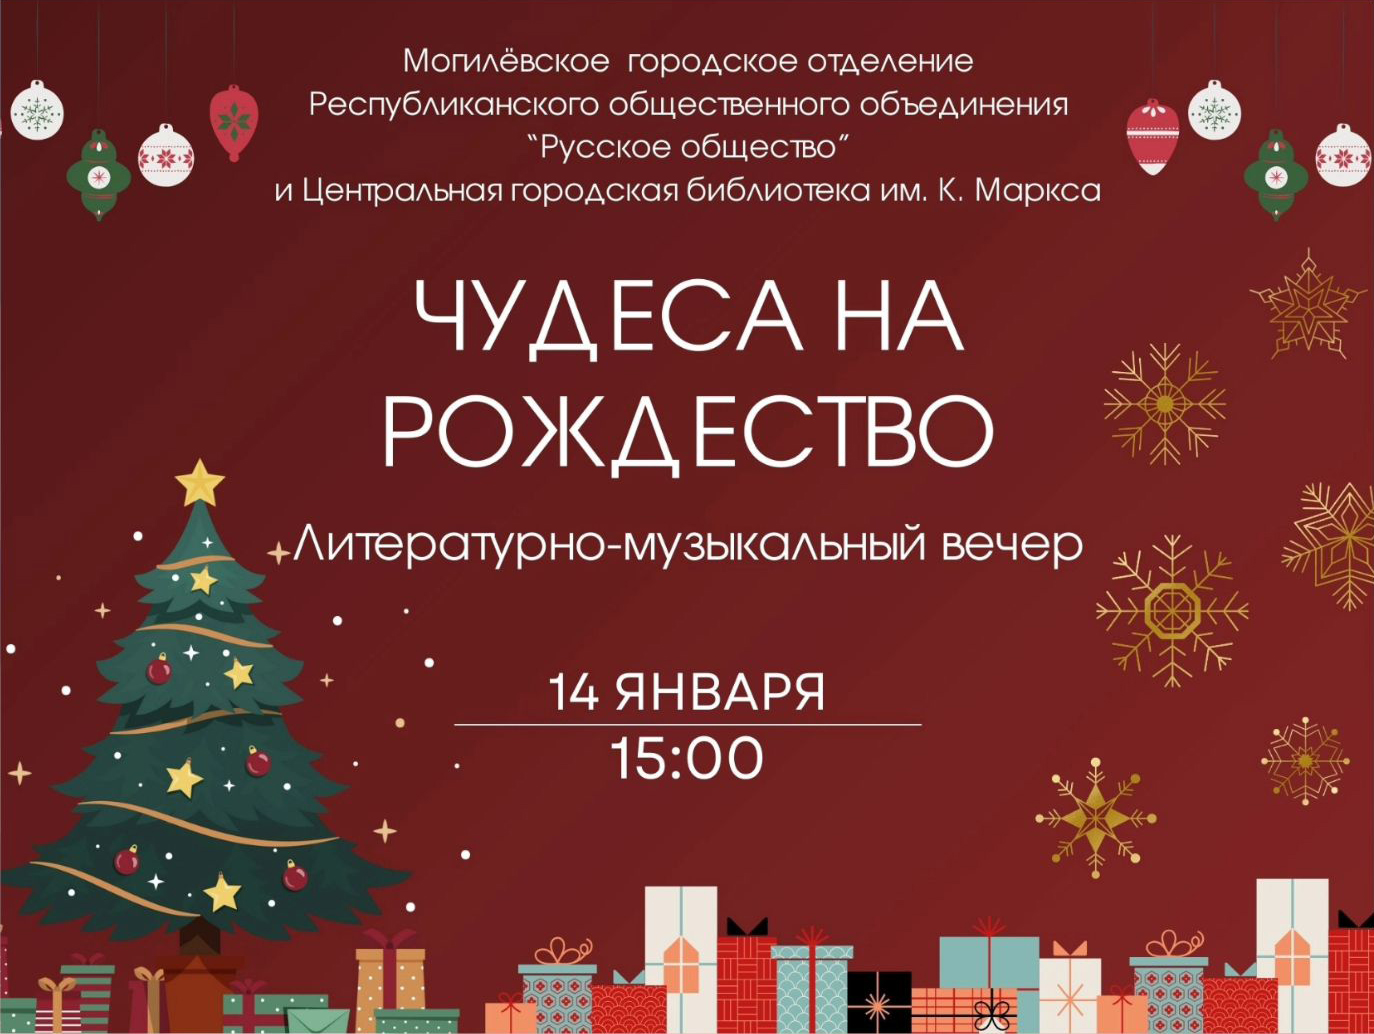 Литературно-музыкальный вечер «Чудеса на Рождество» пройдет в библиотеке им. К.Маркса 14 января